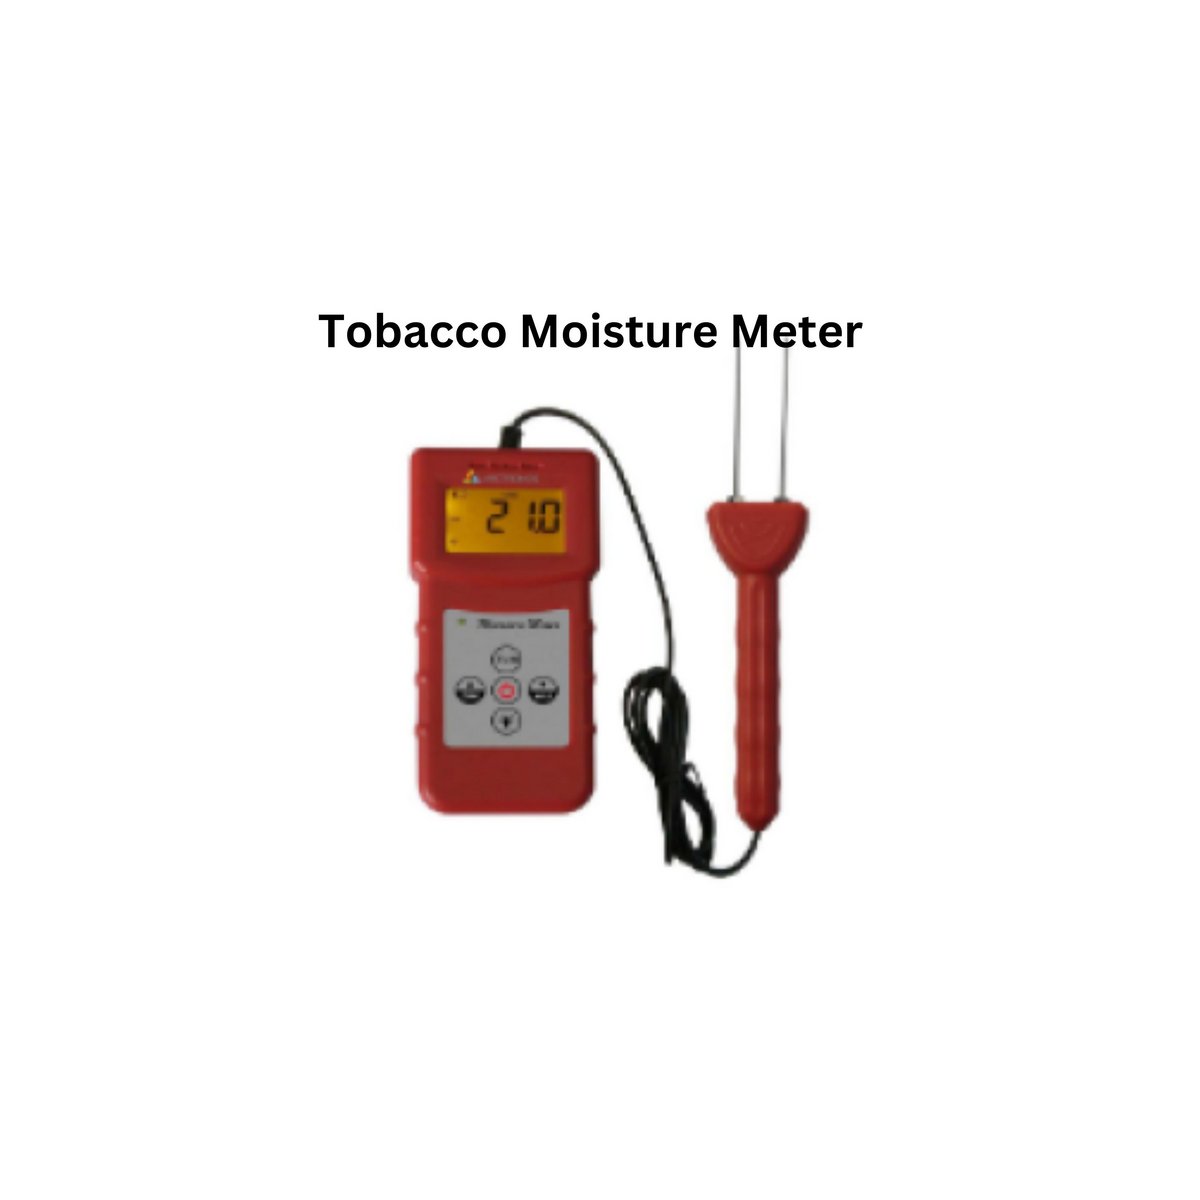 Tobacco Moisture Meter .jpg